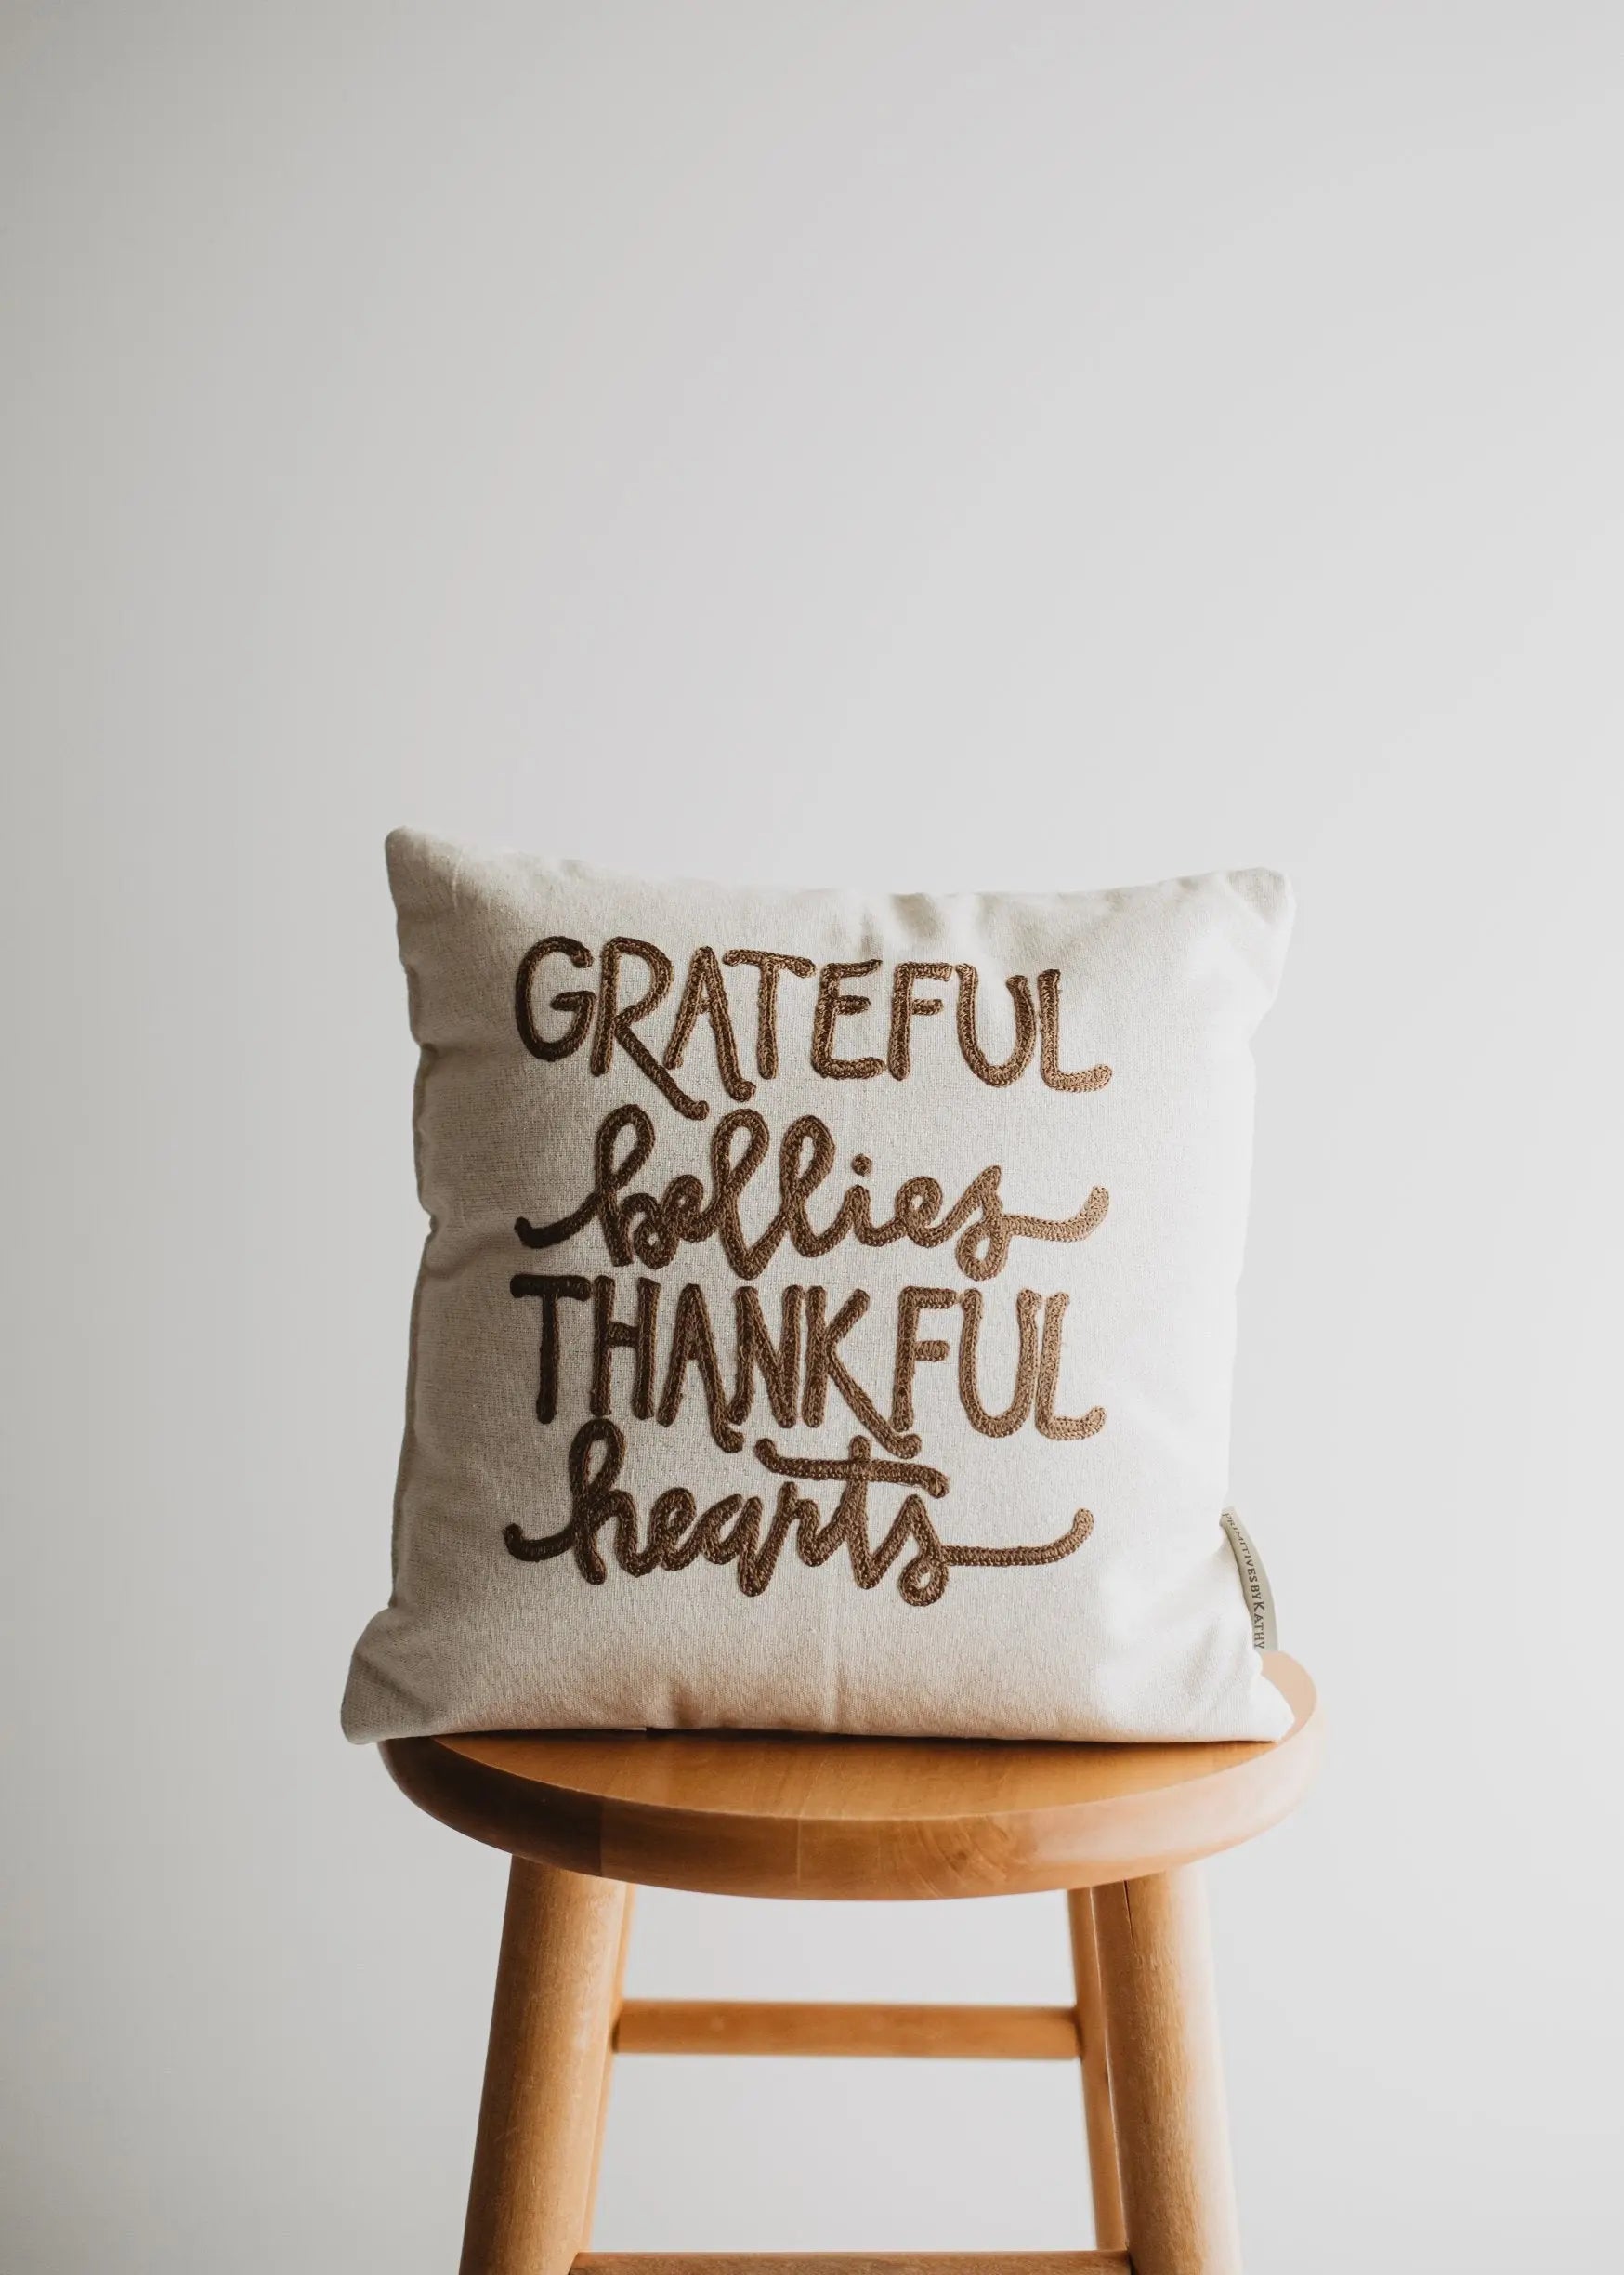 https://uniikpillows.com/cdn/shop/products/Grateful-Bellies-Thankful-Hearts-Pillow---Throw-Pillow-Thanksgiving-Decor---Fall-Decor---Room-Decor---Decorative-Pillow---Gift-for-her-UniikPillows-1680289538.jpg?v=1680289551